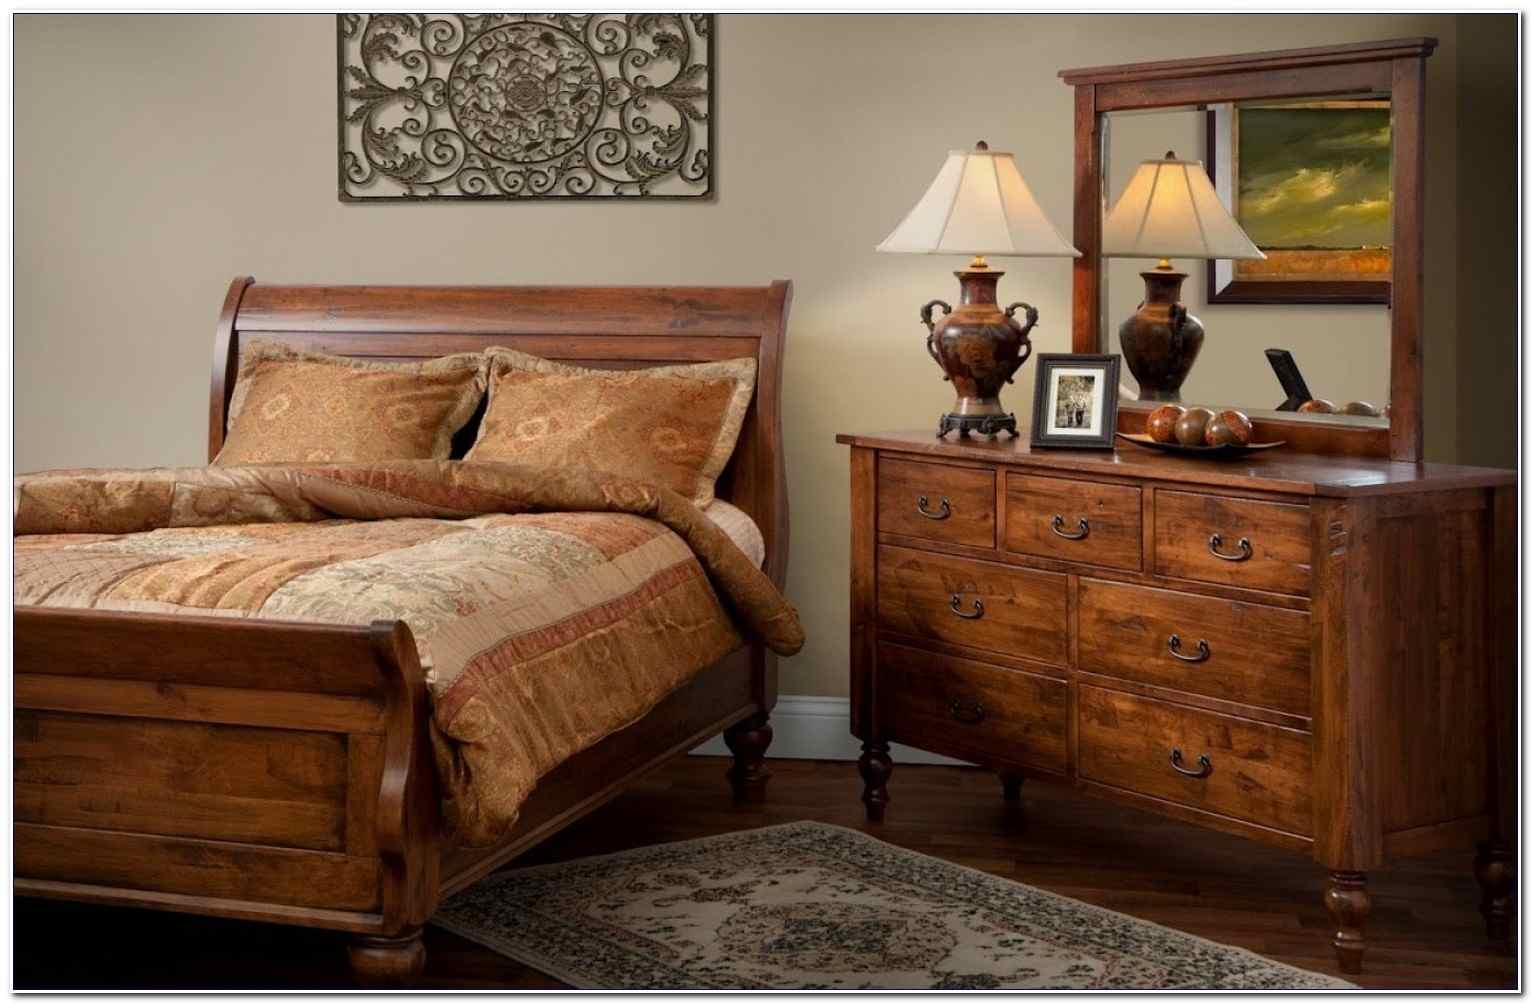 Wooden мебель. Красивая деревянная мебель. Спальня массив дерева. Современная деревянная мебель. Деревянная мебель в интерьере.